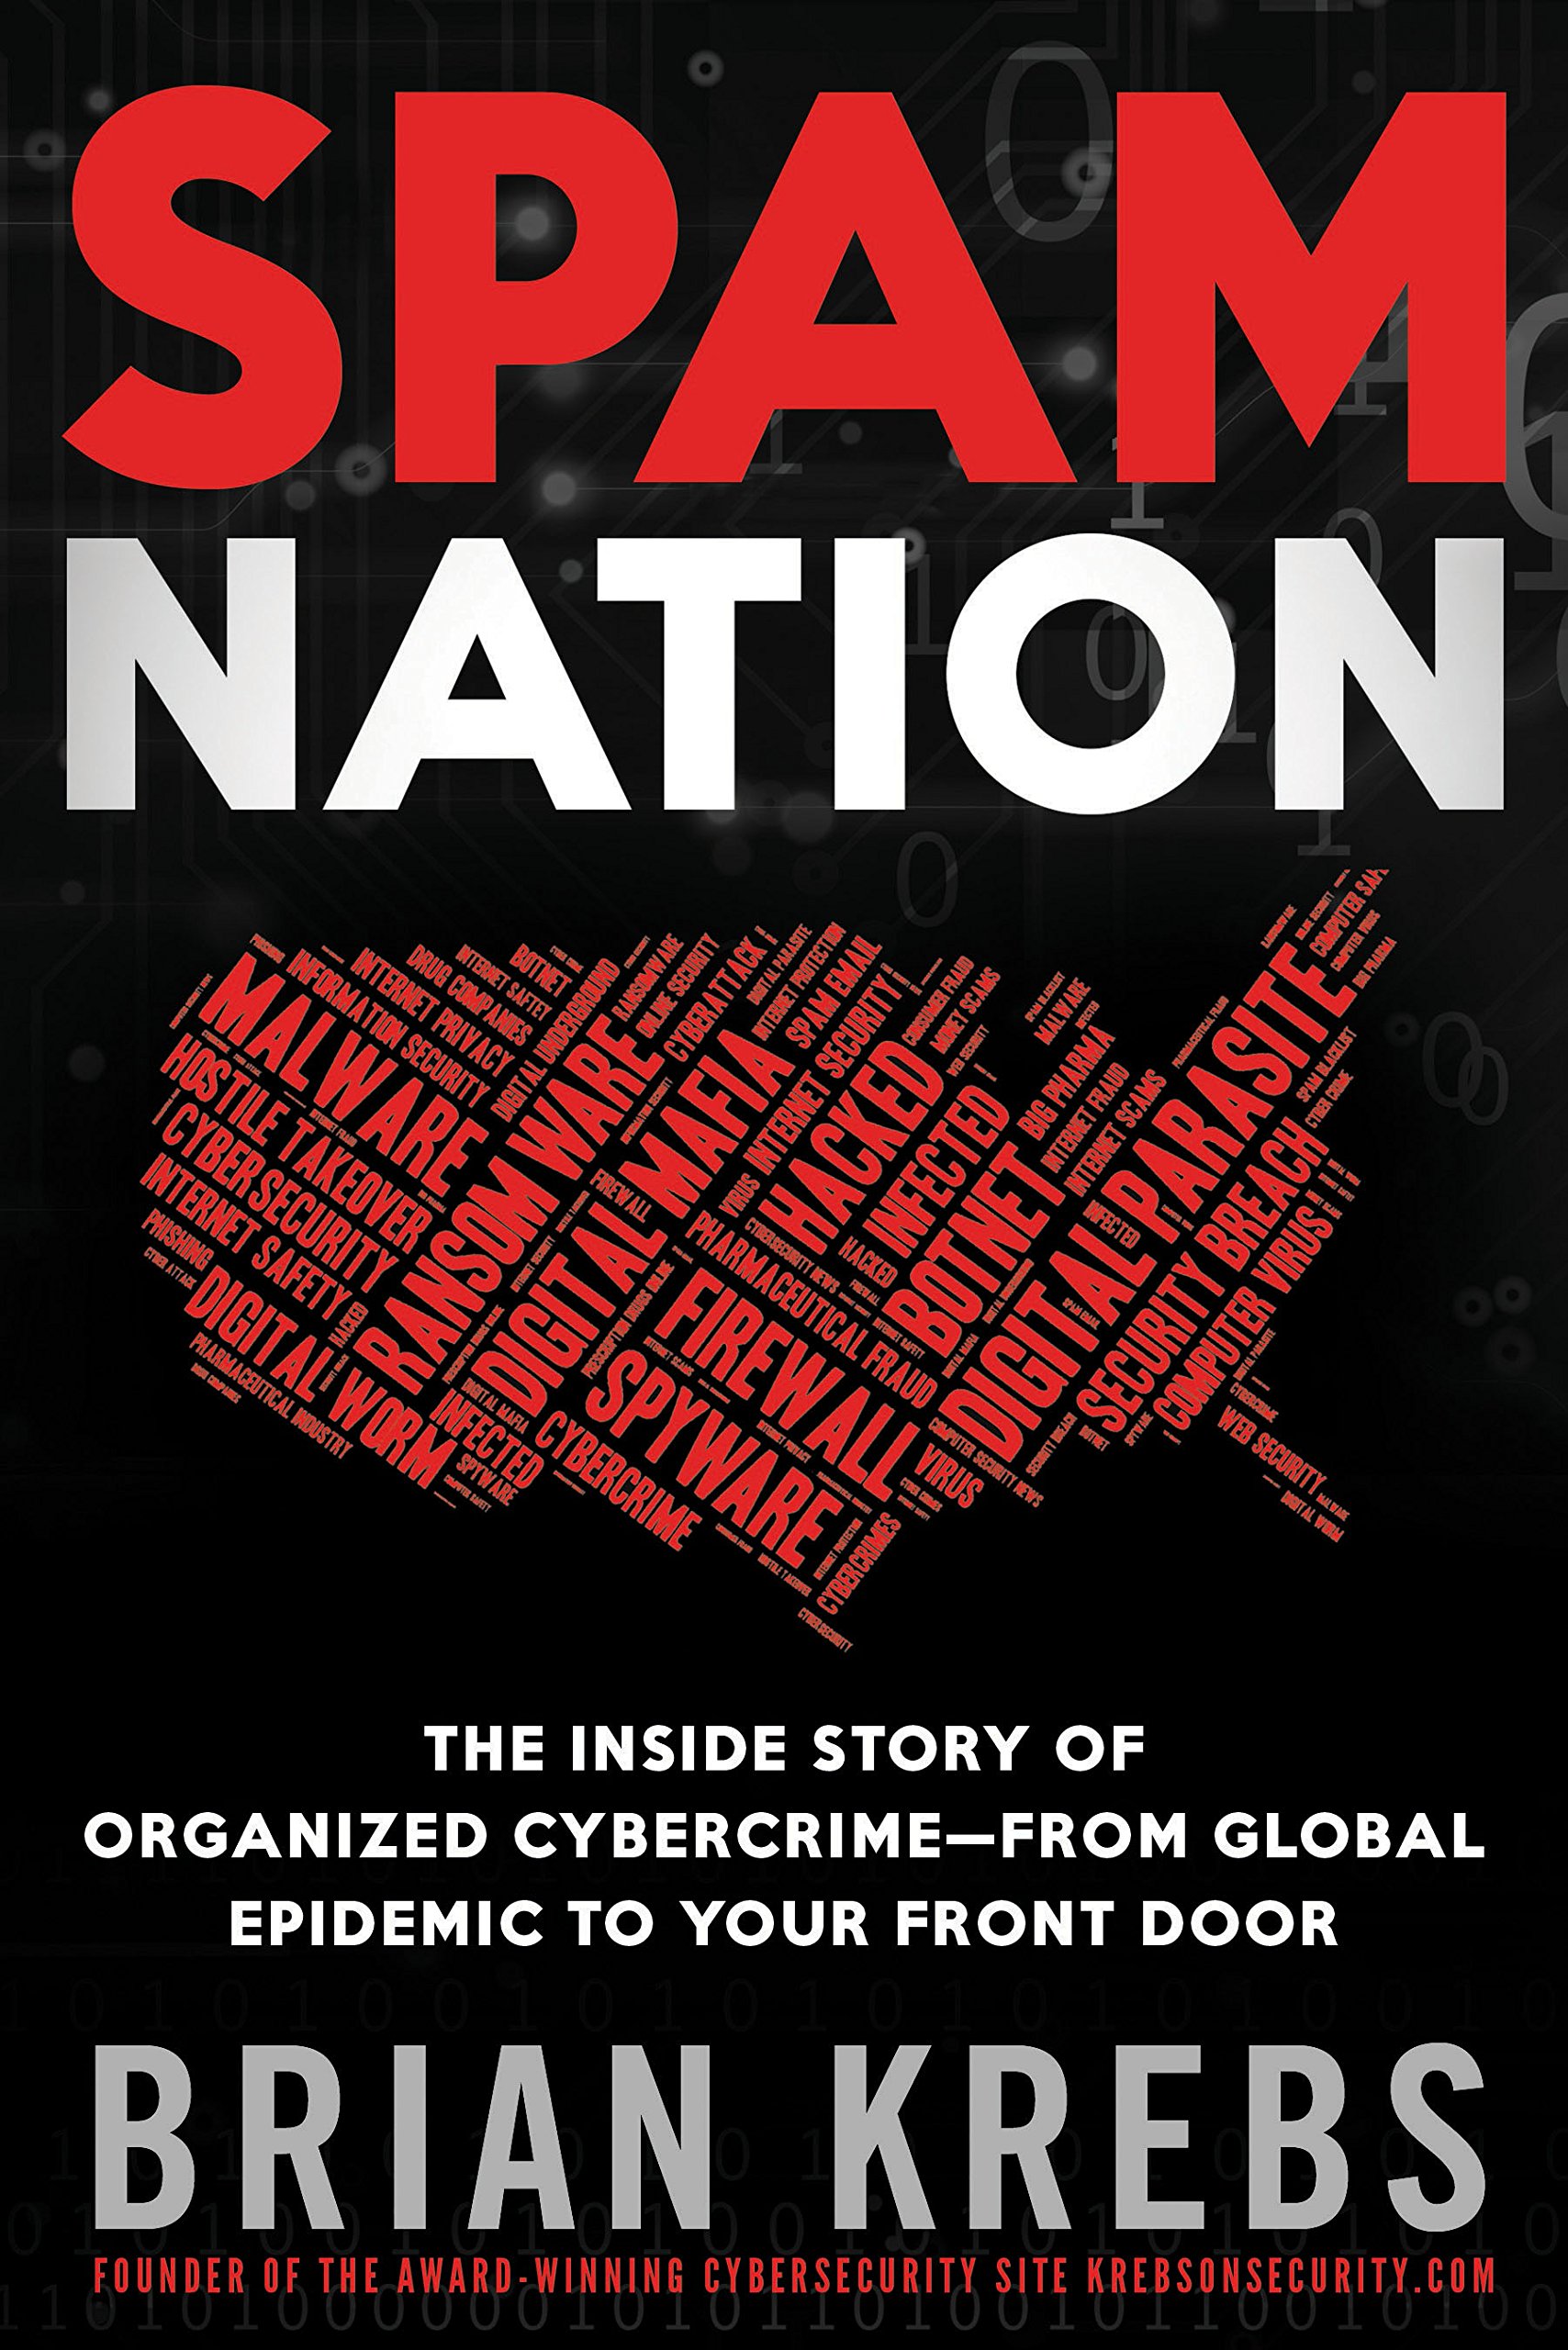 Spam Nation by Brian Krebs